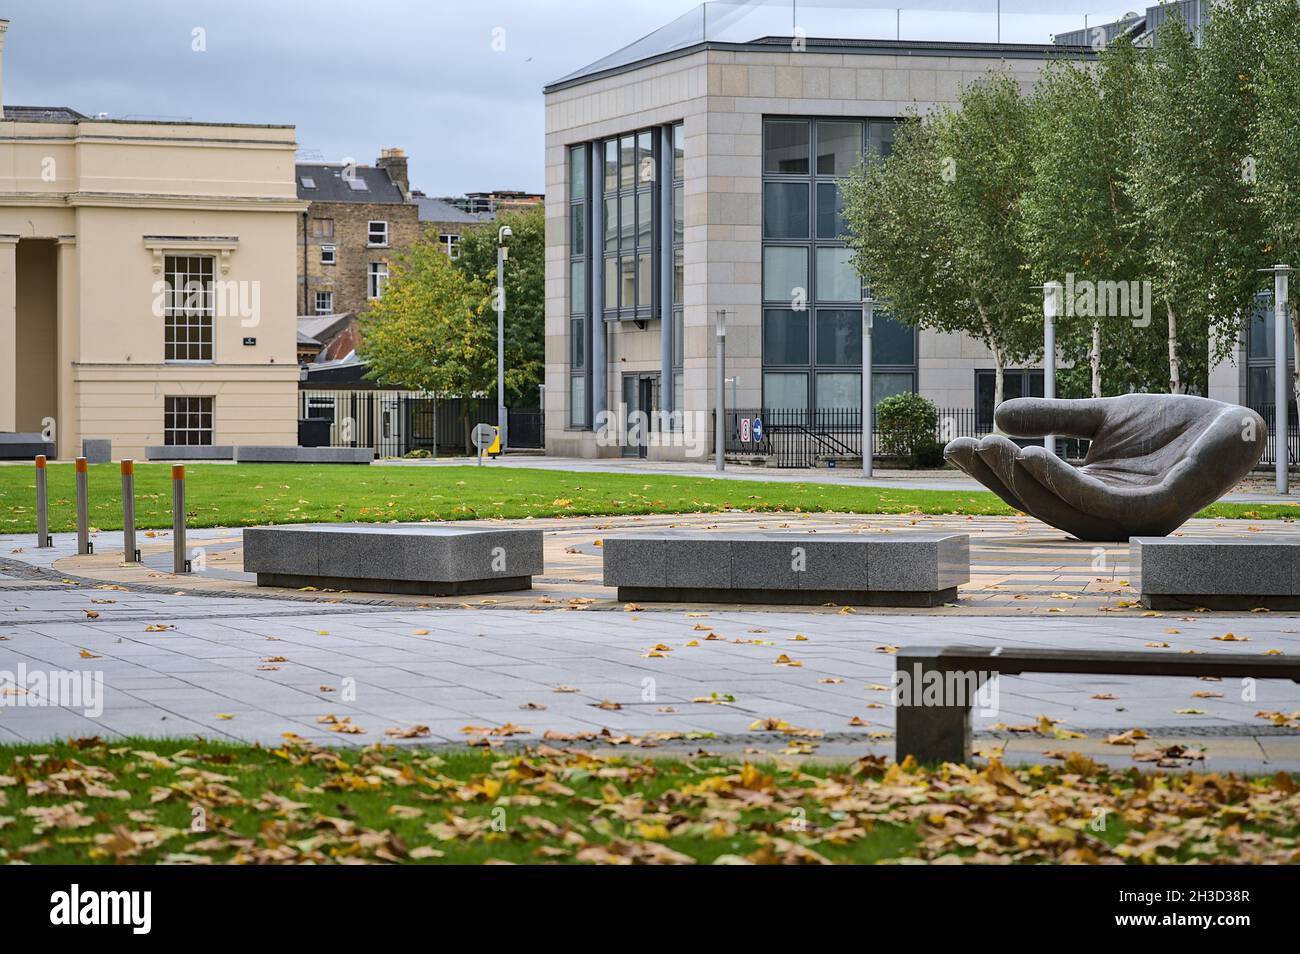 Dublin, Irlande - 23 octobre 2021 : vue d'automne de la sculpture de bronze à la main en attente dans la cour du ministère de l'éducation avec des feuilles jaunes tombées Banque D'Images